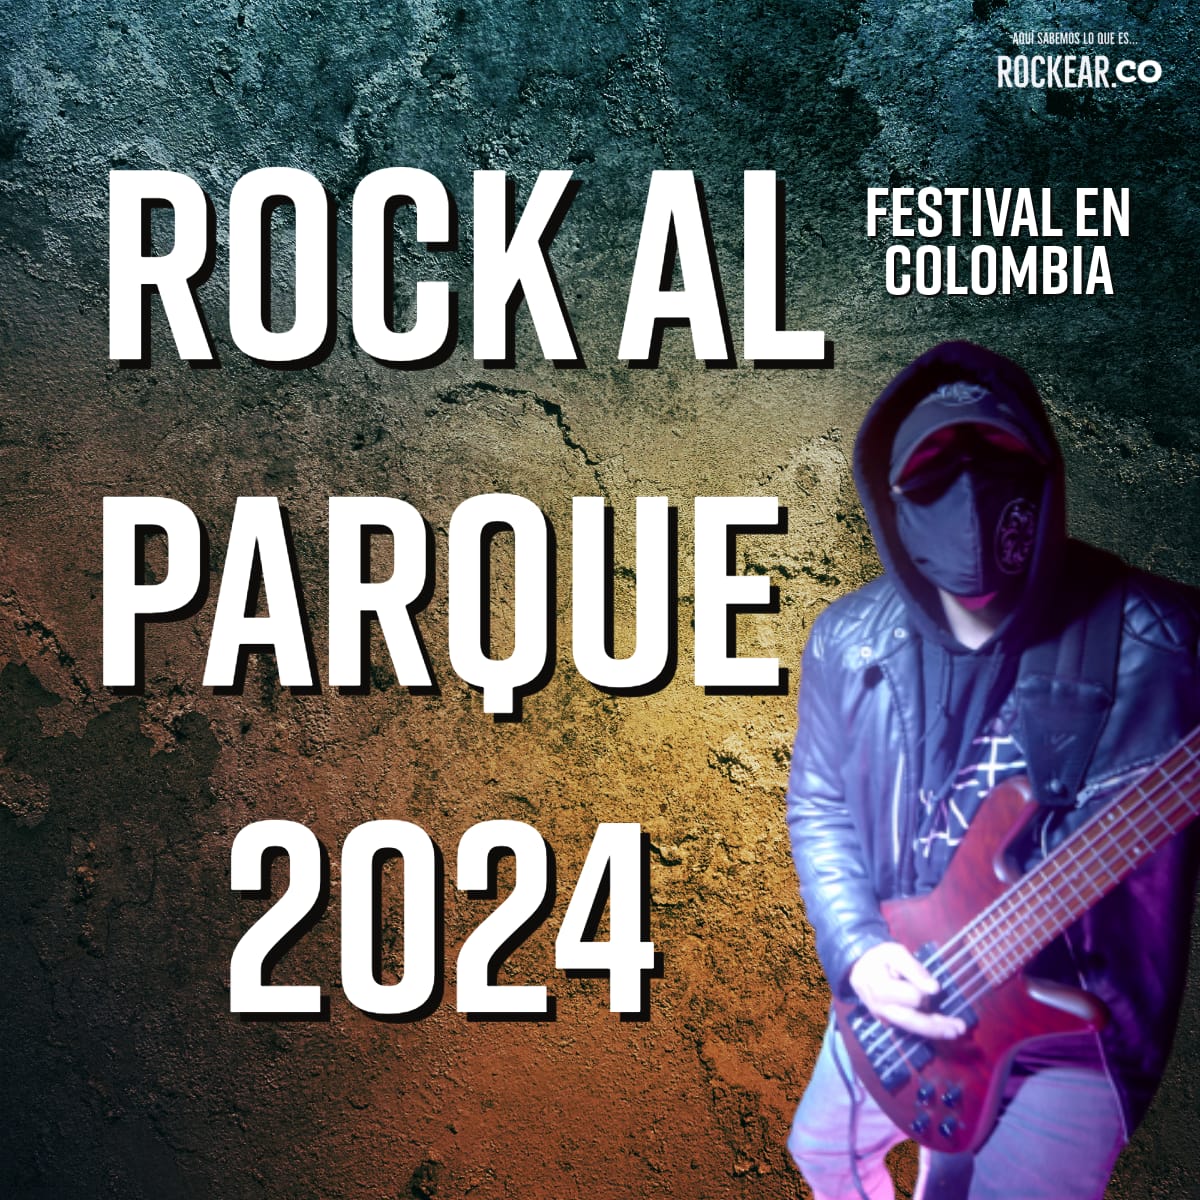 Rock al Parque 2024 nota rockear.Co